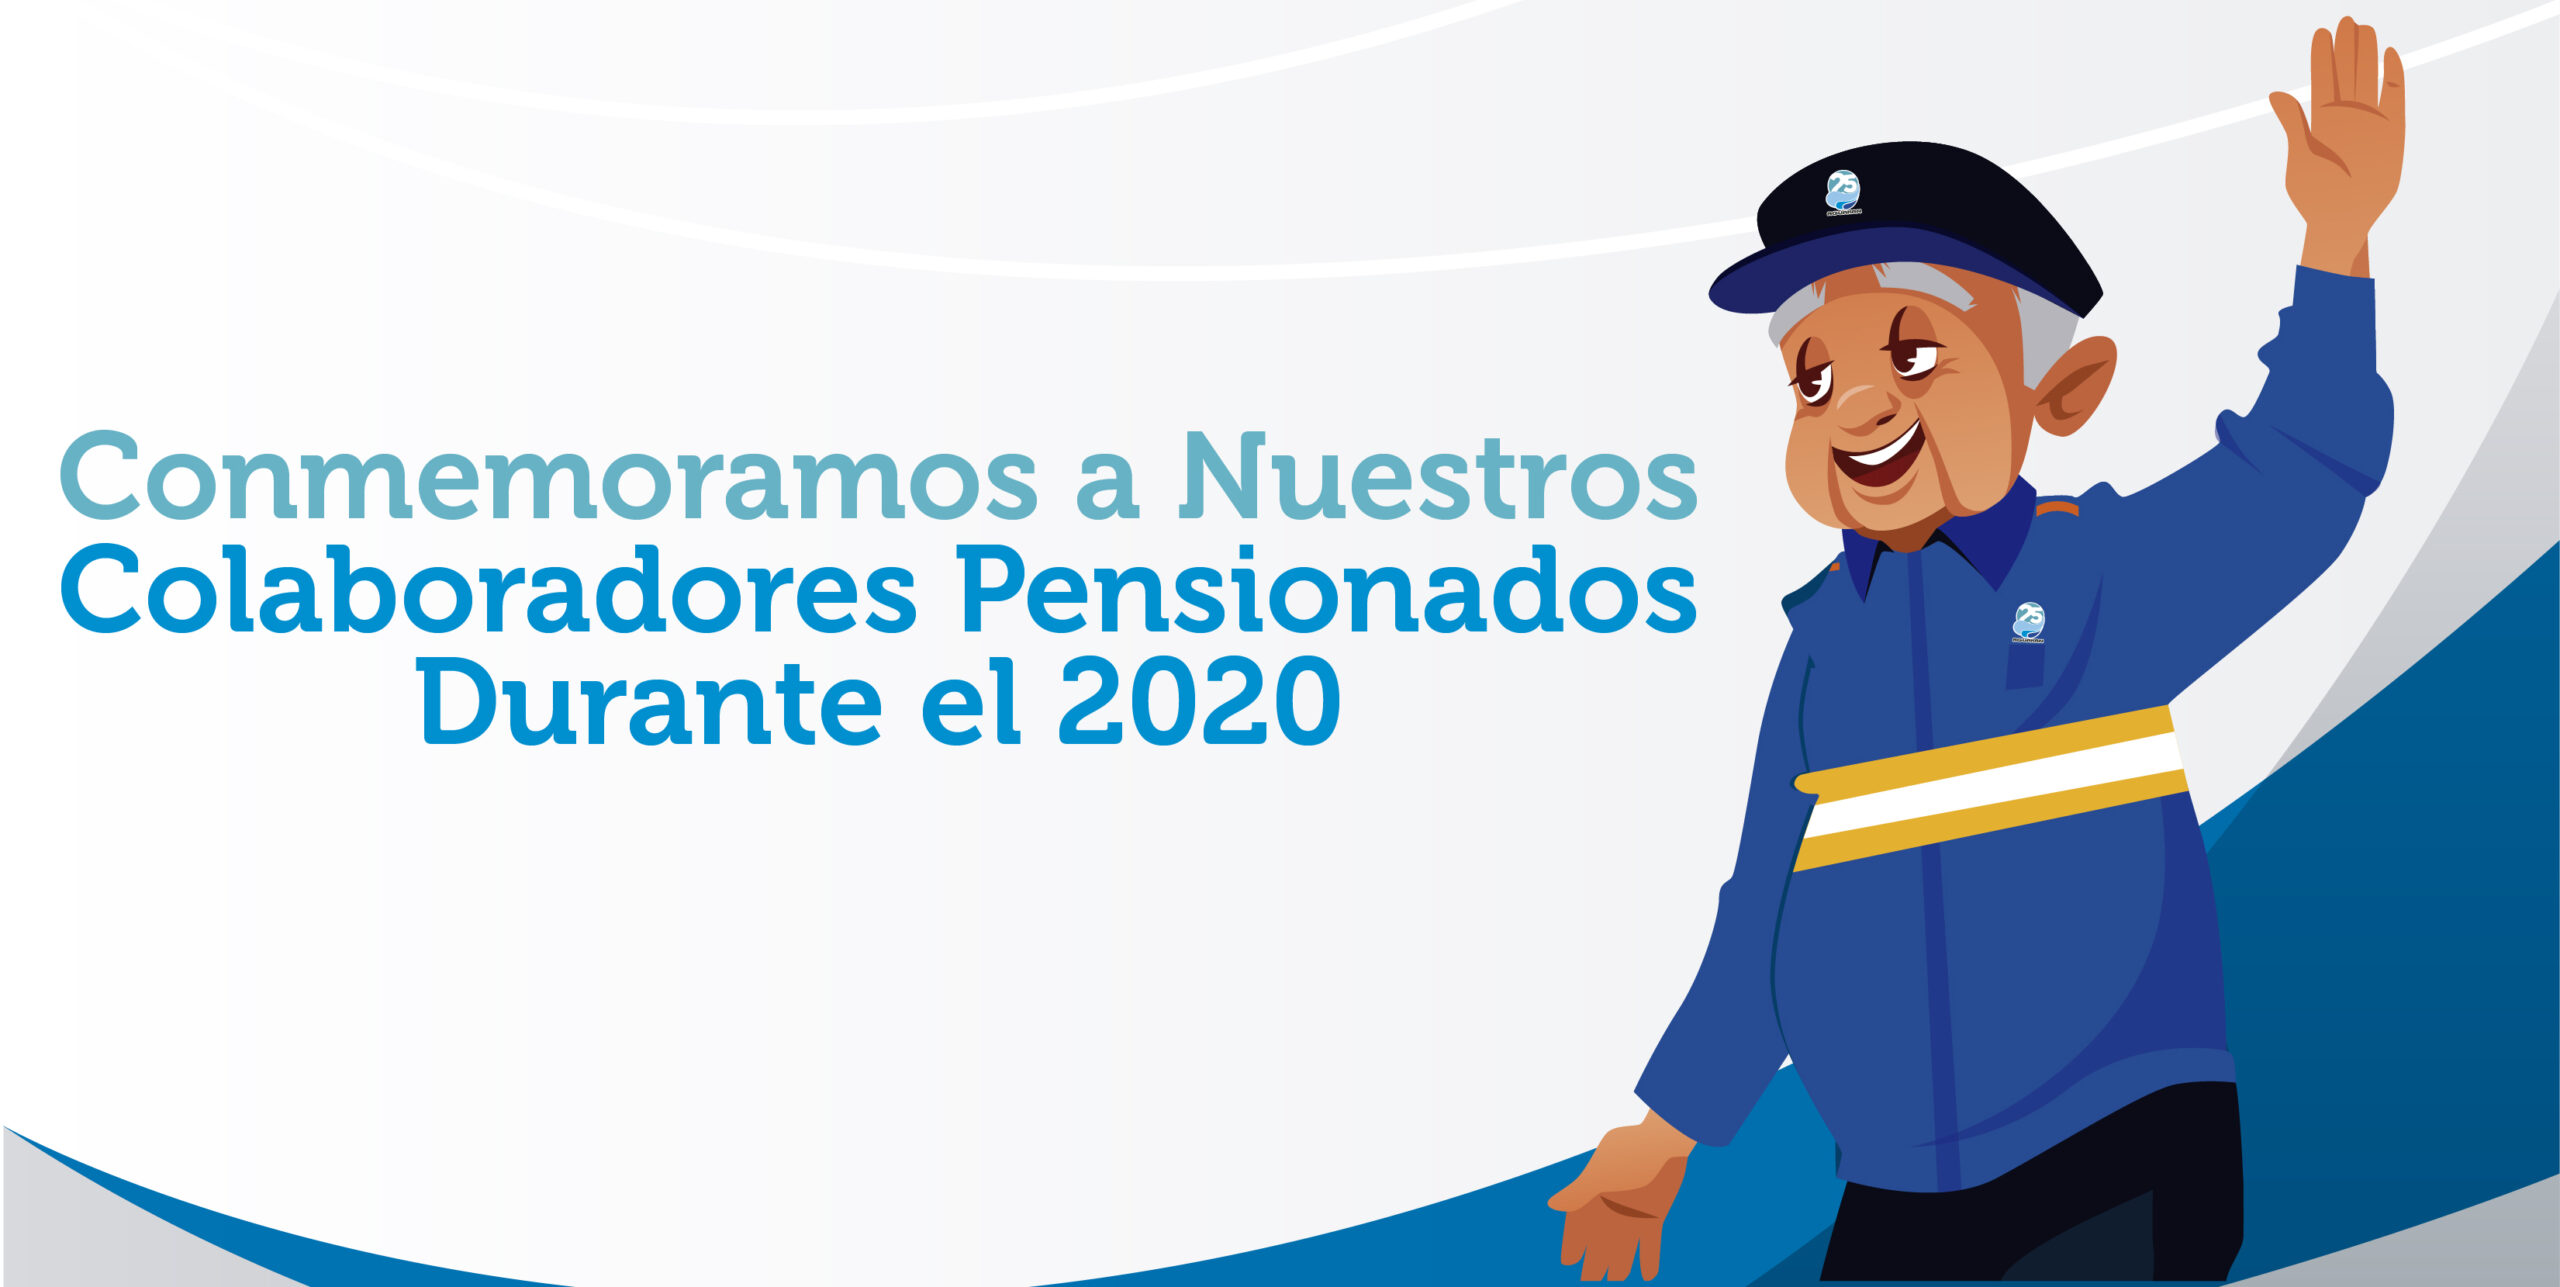 Conmemoramos a nuestros pensionados del periodo 2020